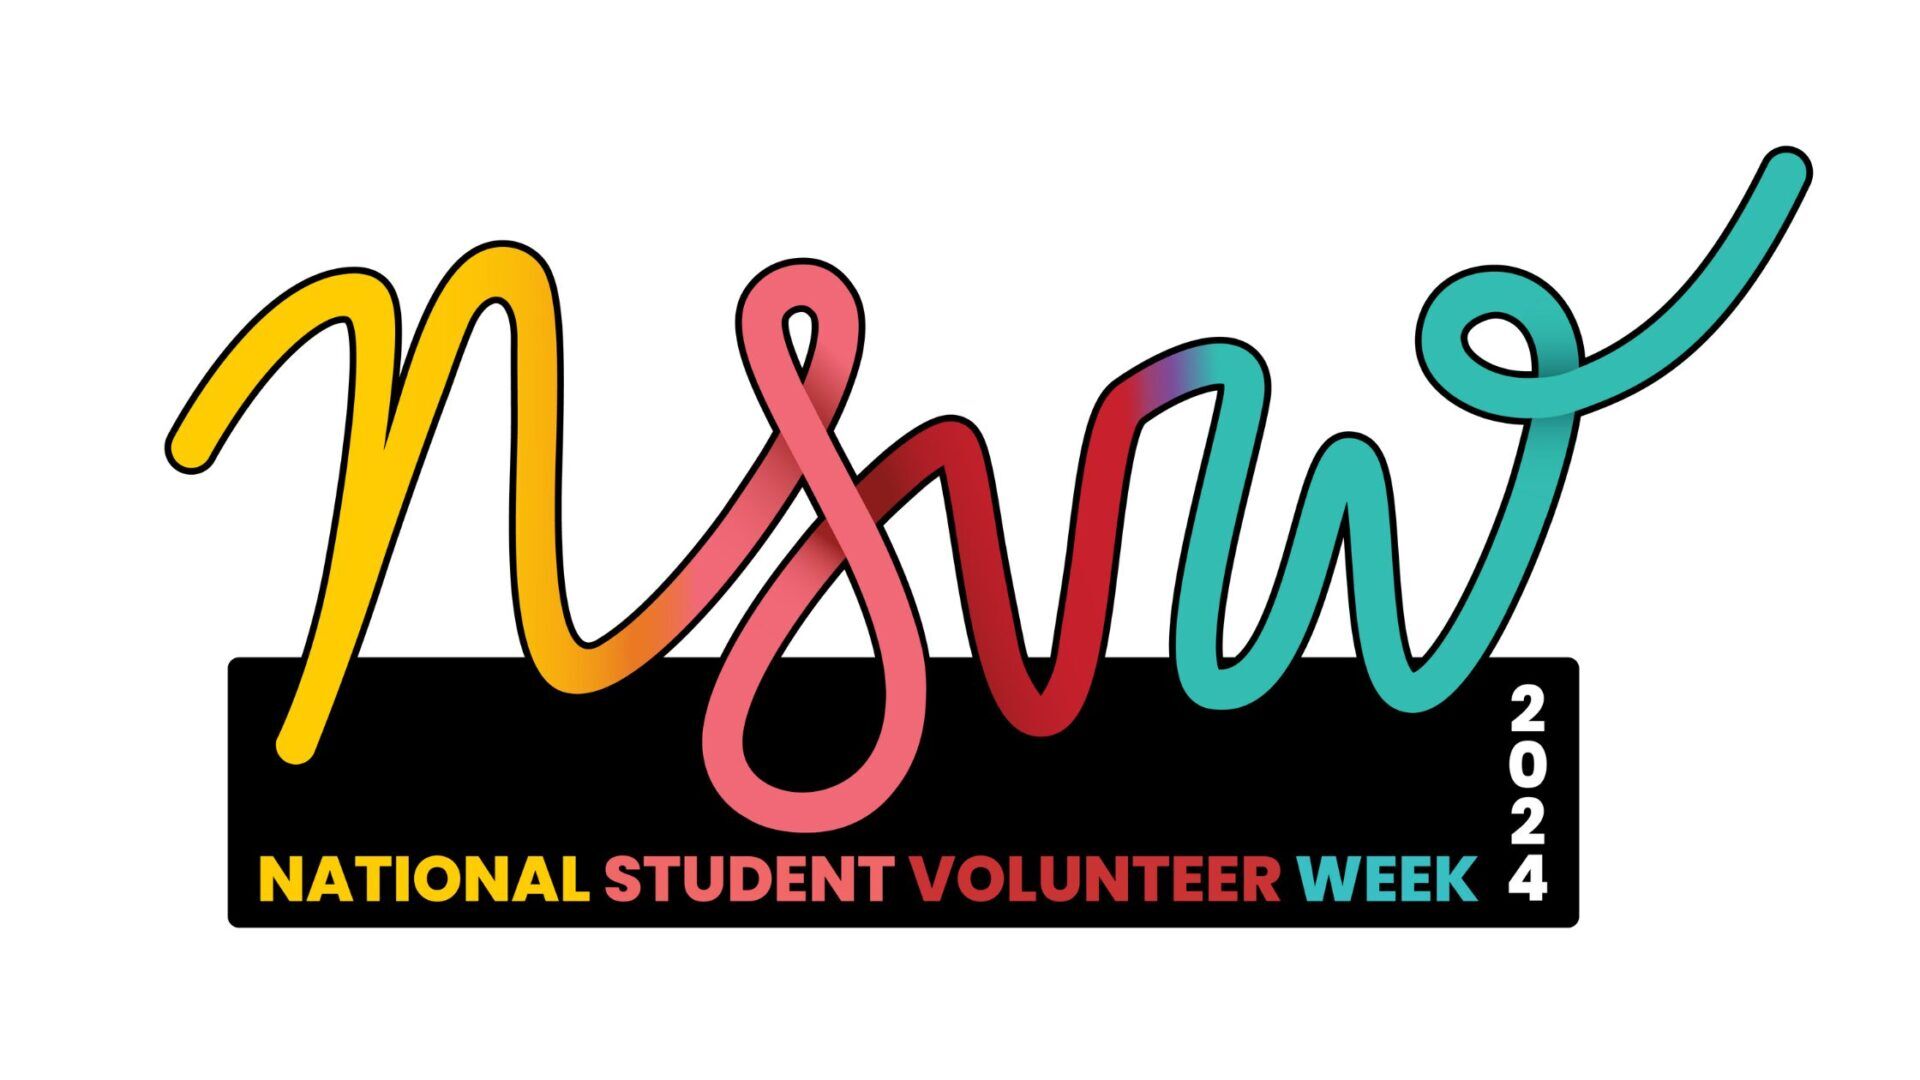 National Student Volunteer Week